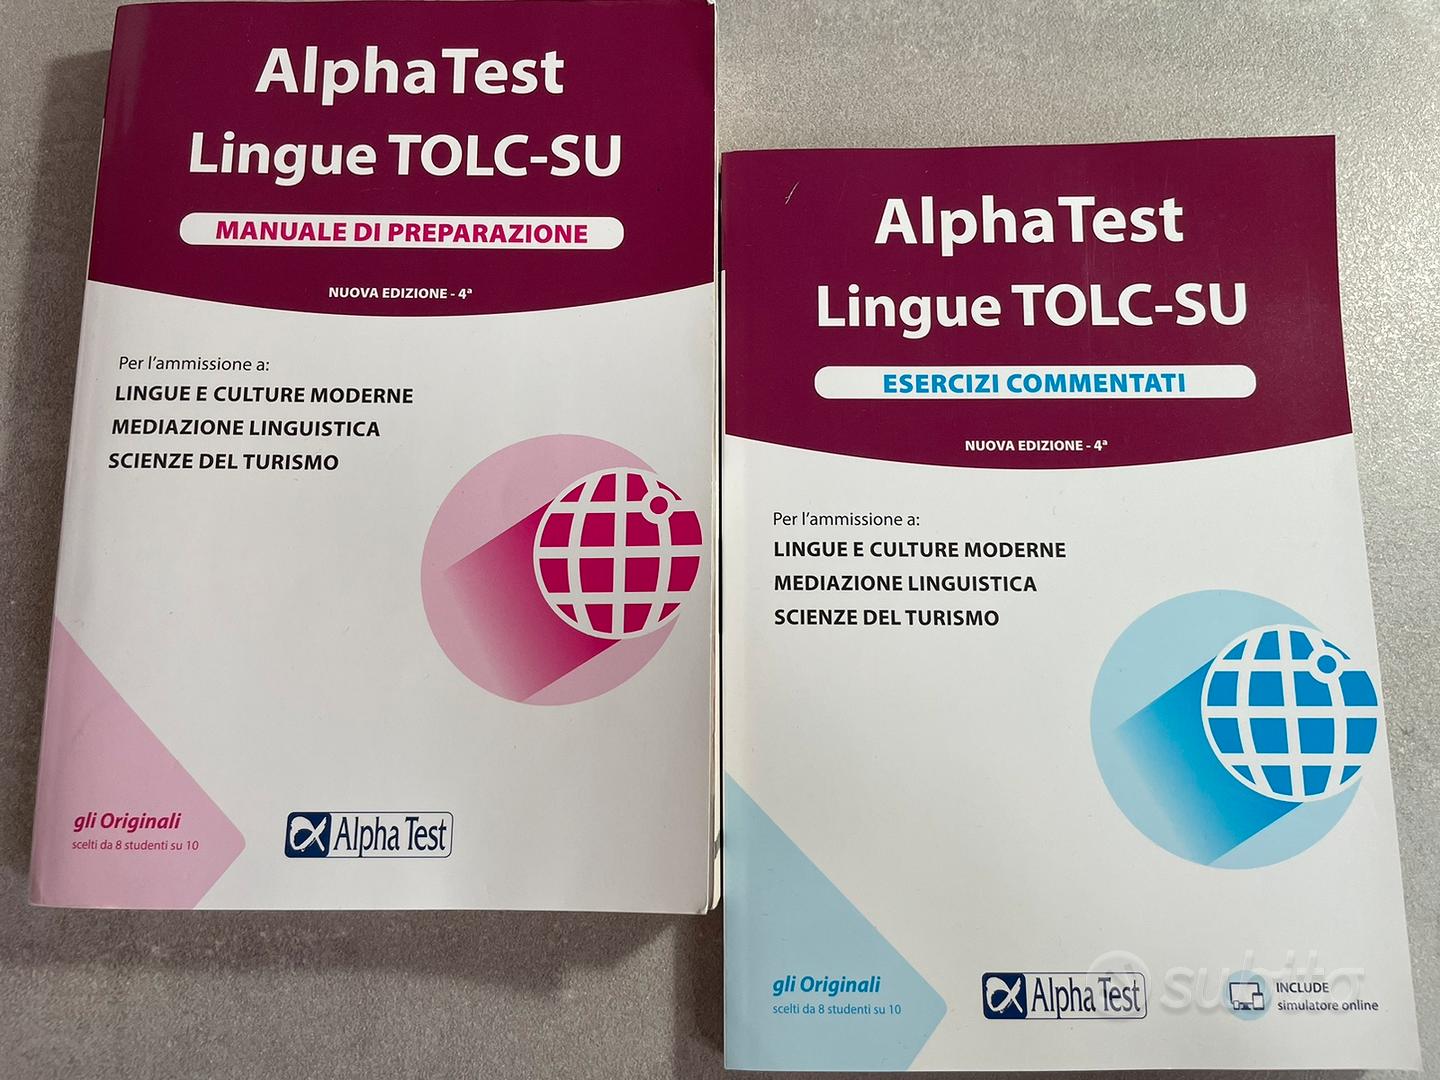 Alpha Test. Lingue. Manuale di preparazione. Per l'ammissione a lingue e  culture moderne, mediazione linguistica